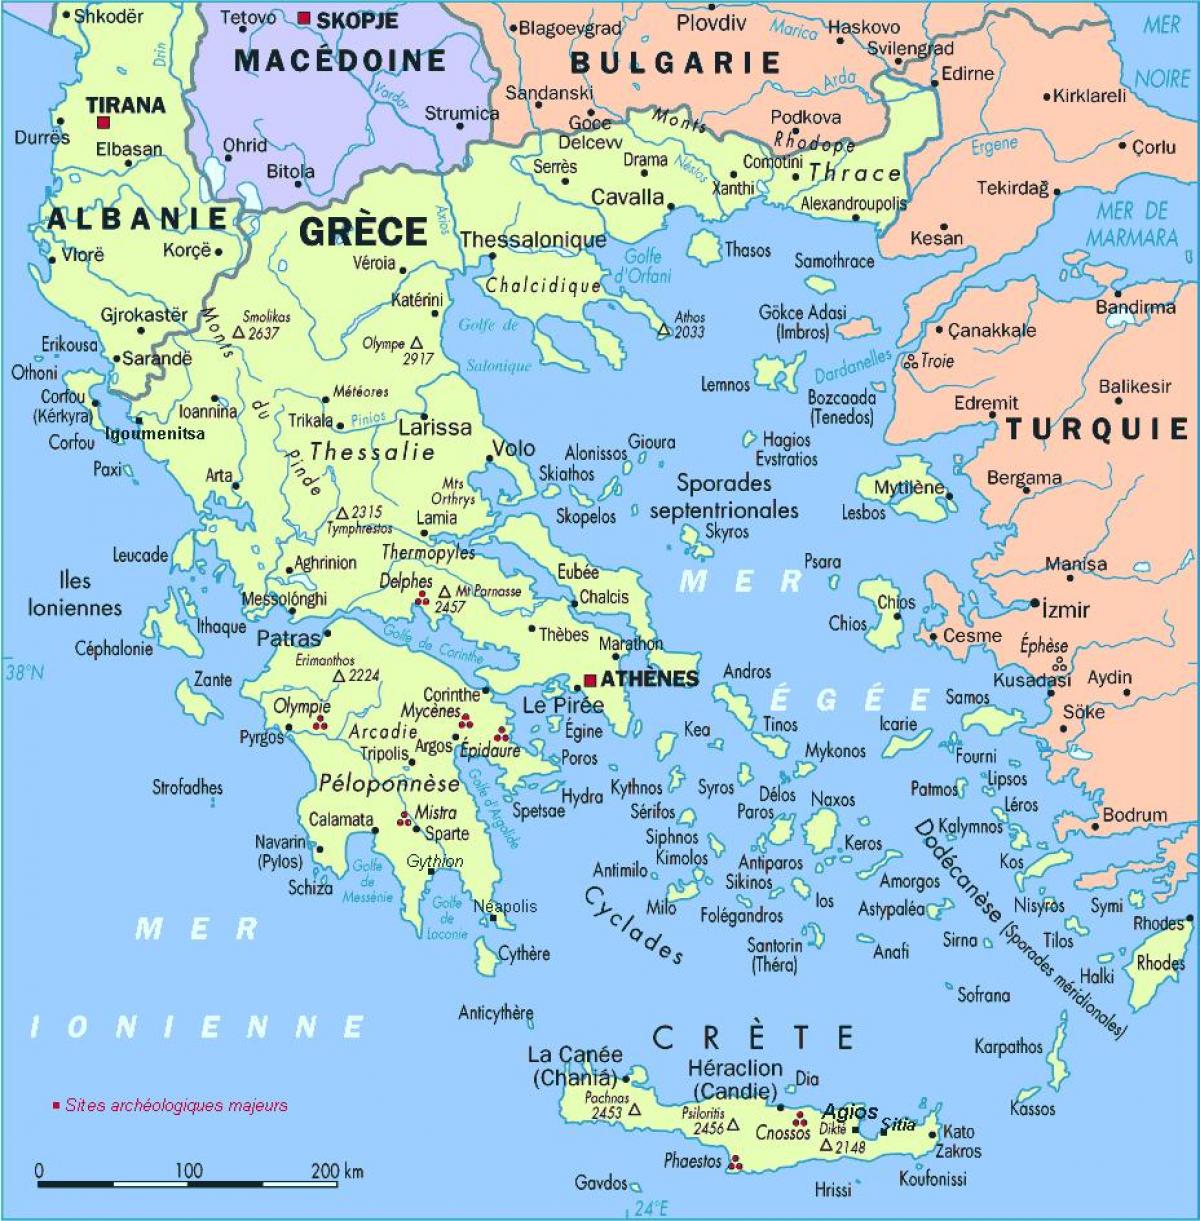 خريطة اليونان والمنطقة المحيطة بها